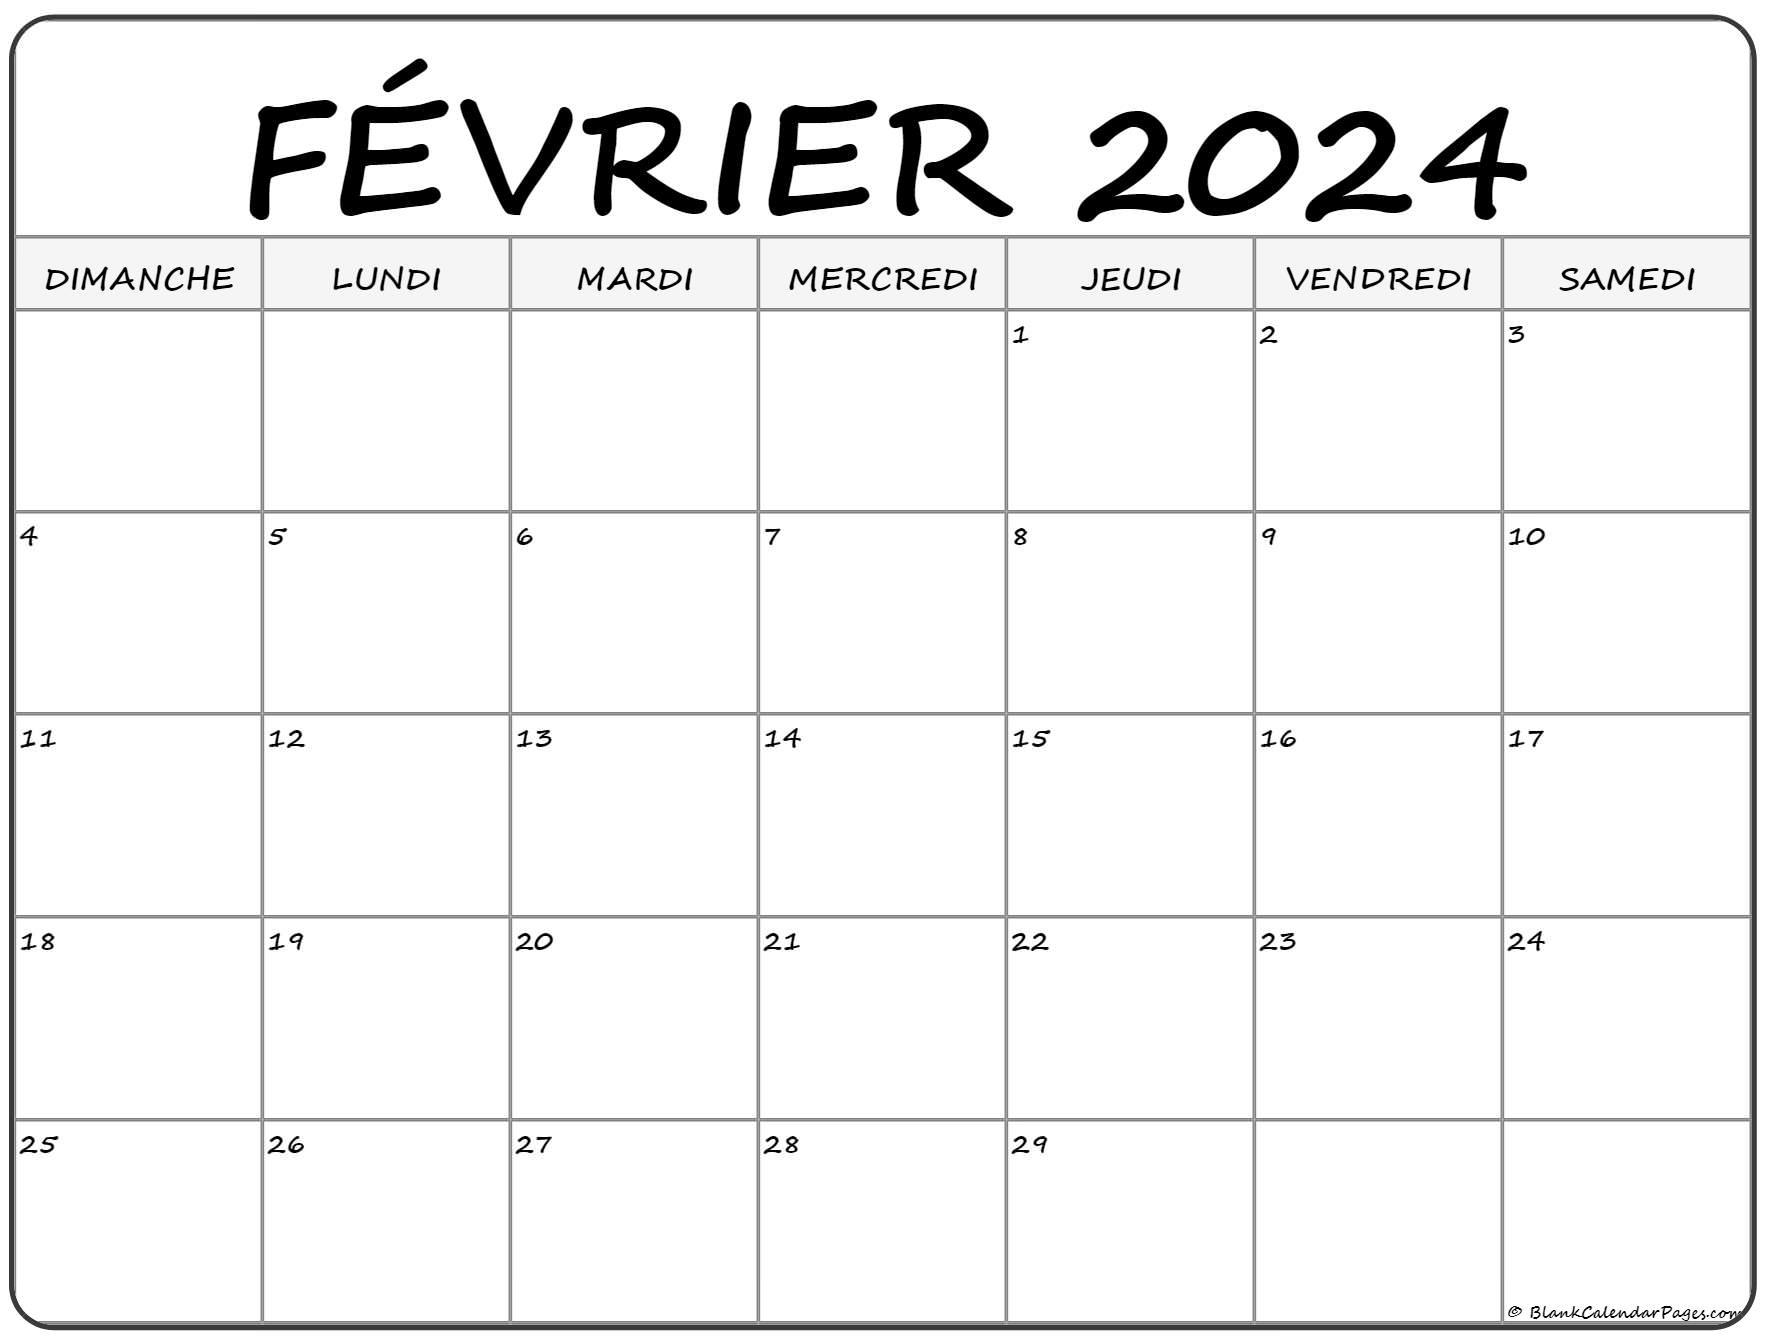 Calendrier Fevrier 2022 à Imprimer février 2022 calendrier imprimable | Calendrier gratuit